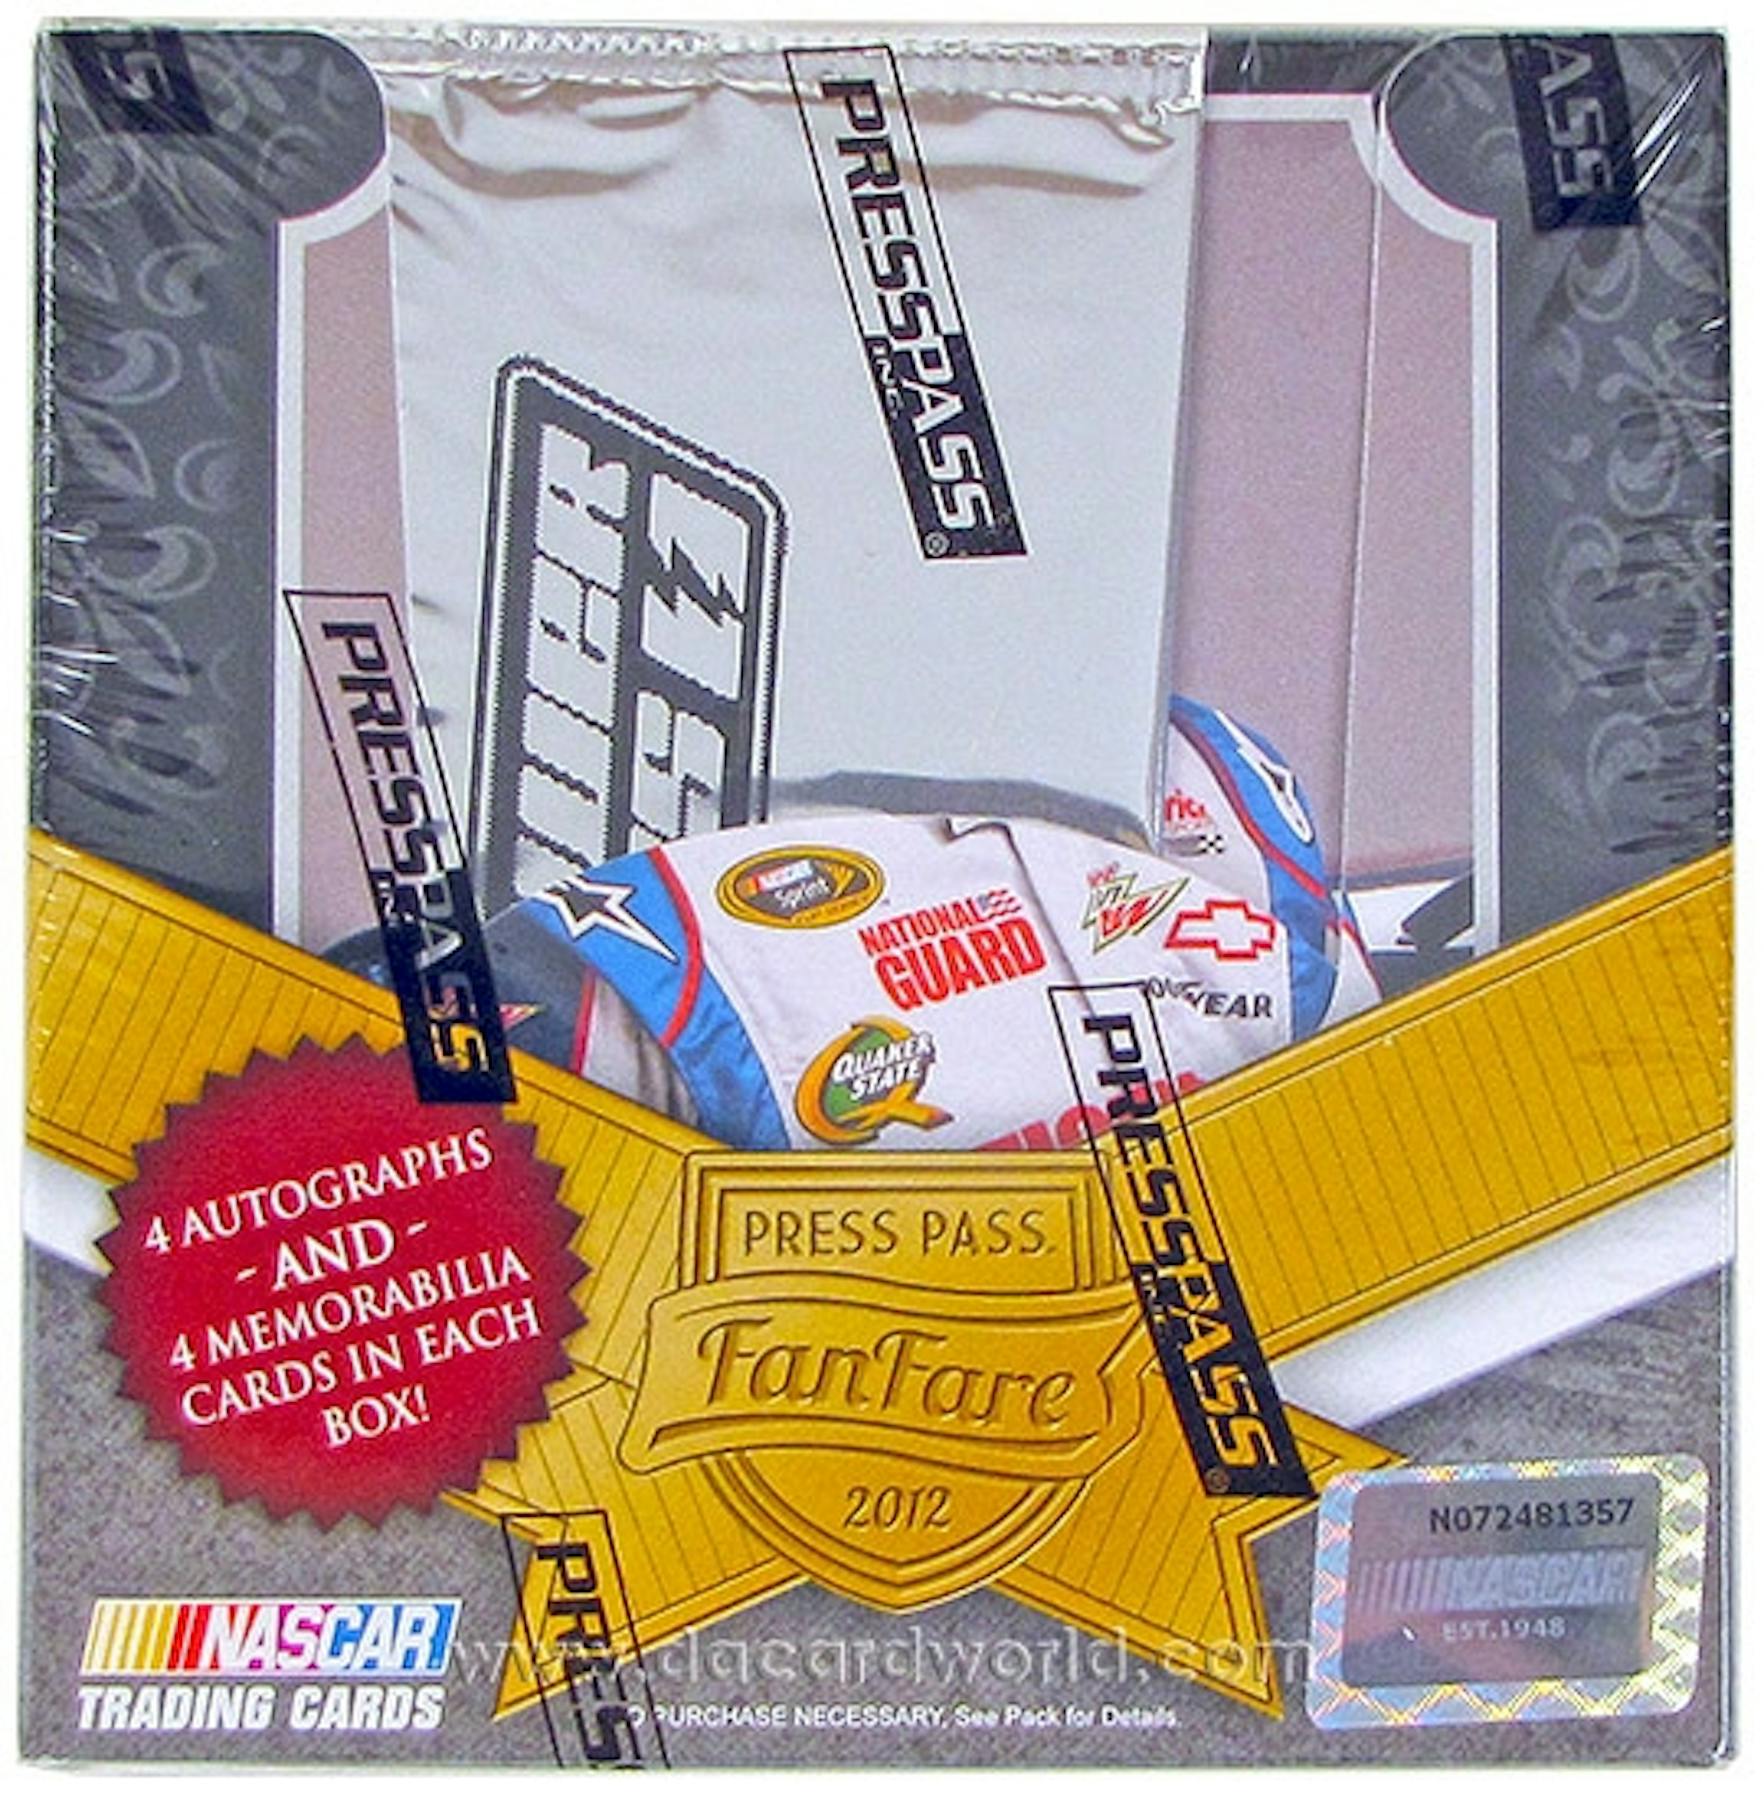 2012 Press Pass Fanfare Racing Hobby Box | DA Card World1764 x 1800